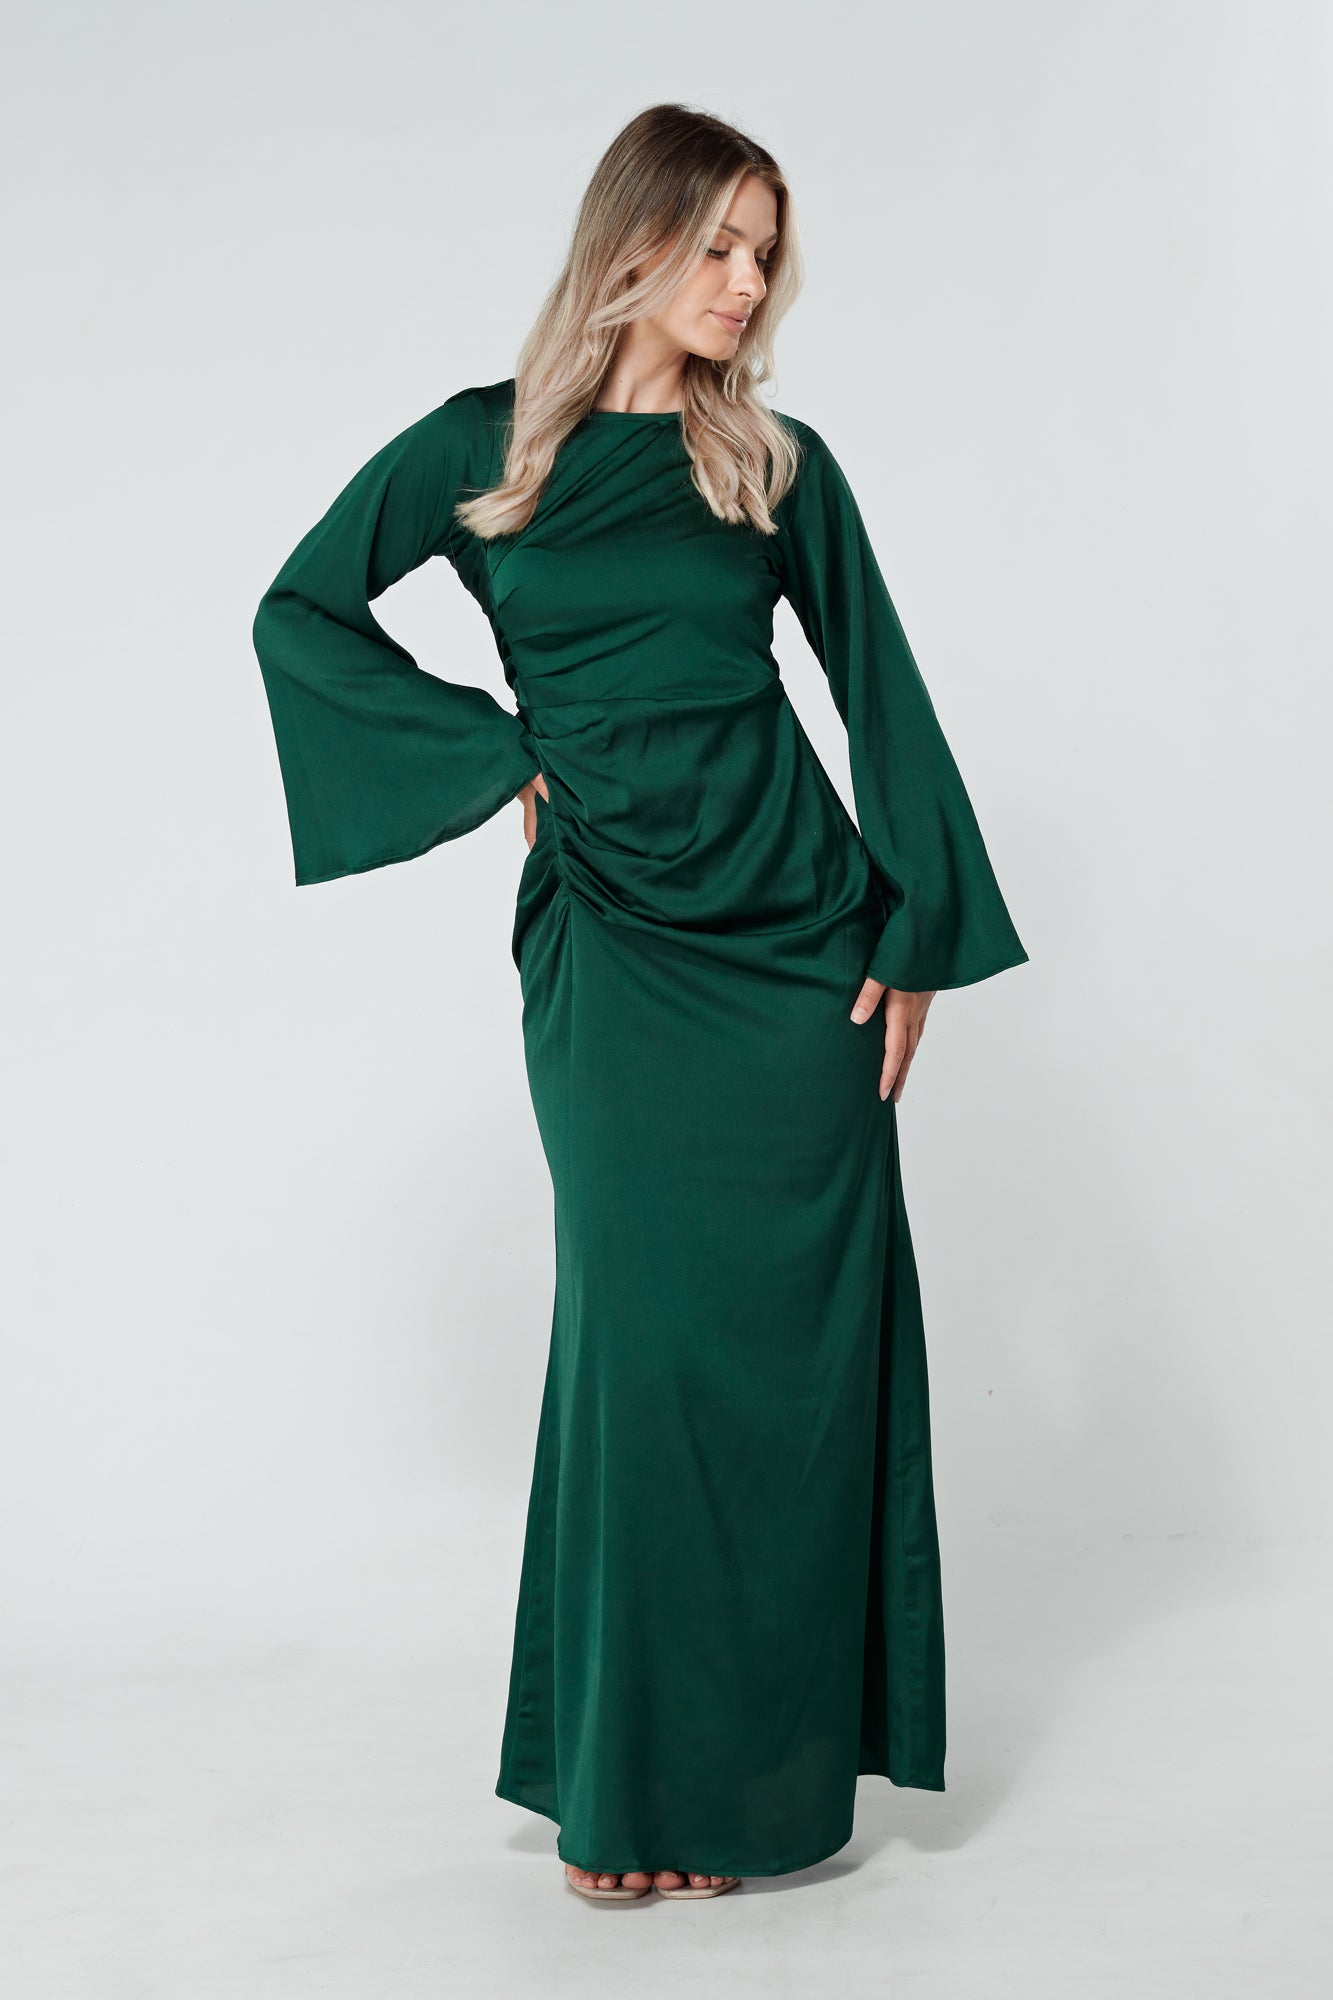 Layalina Dark Green Maxi Dress With Long Sleeves - TAHLIRA